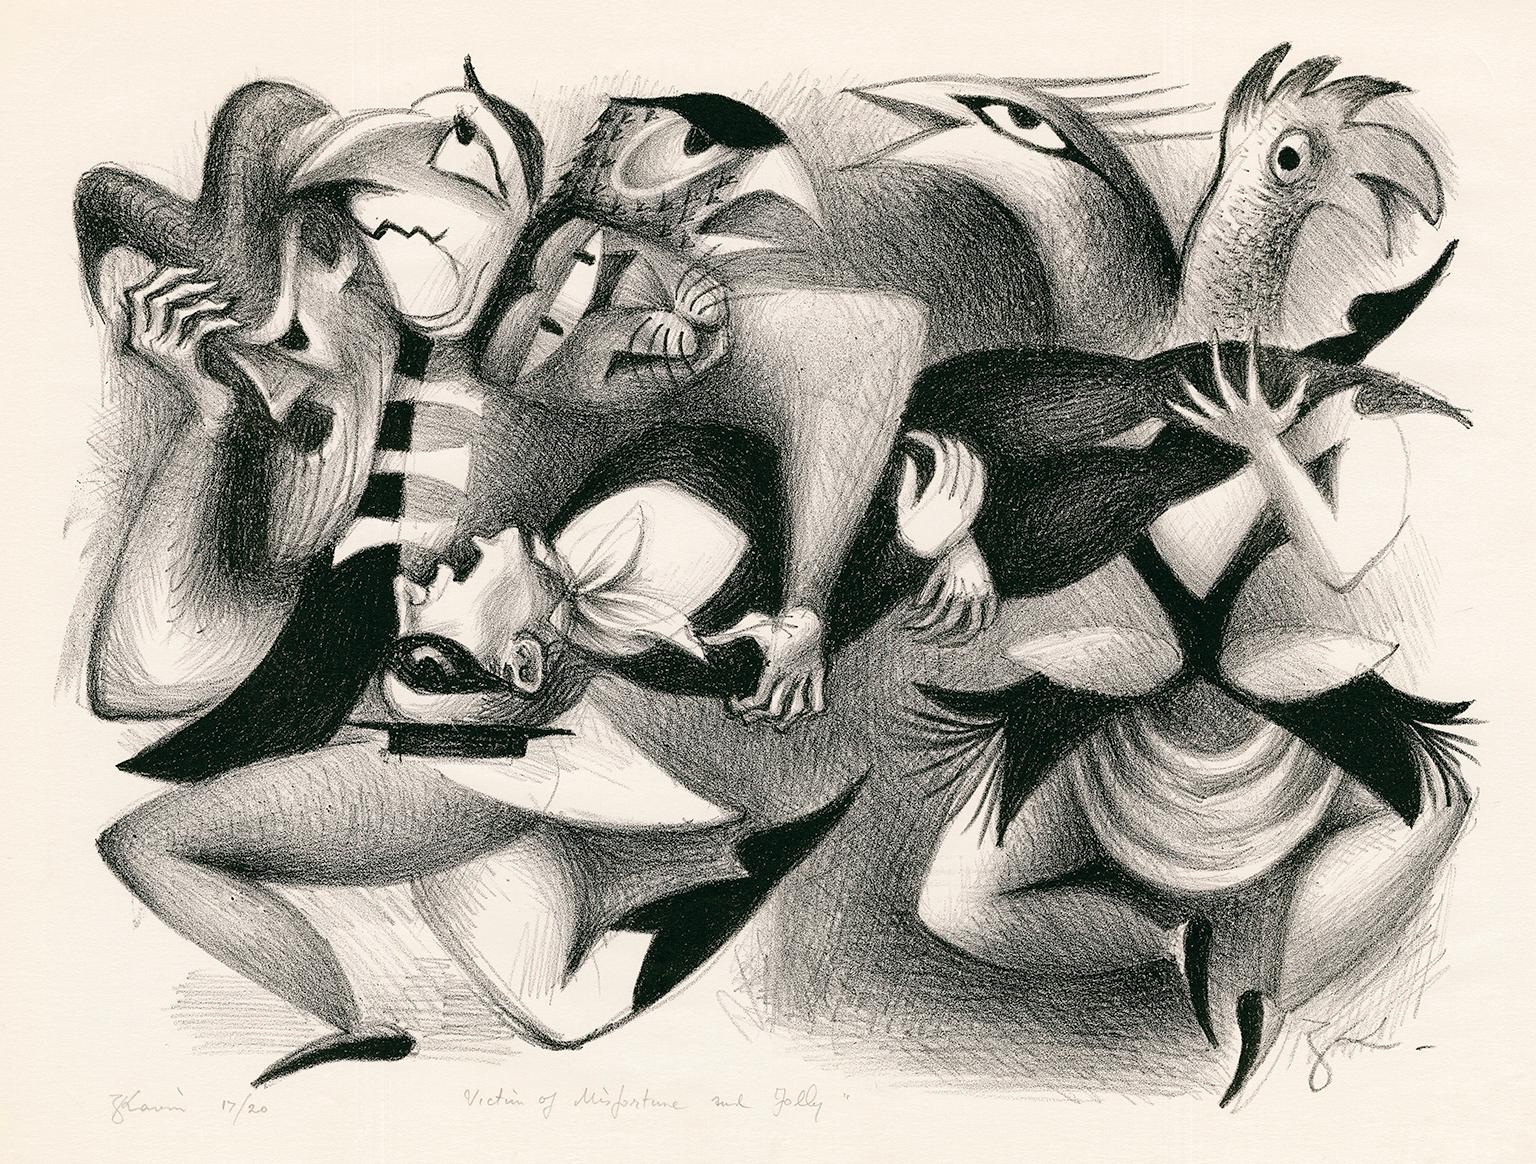 Figurative Print Zena Kavin - Victime du malheur et de la folie" - Fantaisie surréaliste des années 1930